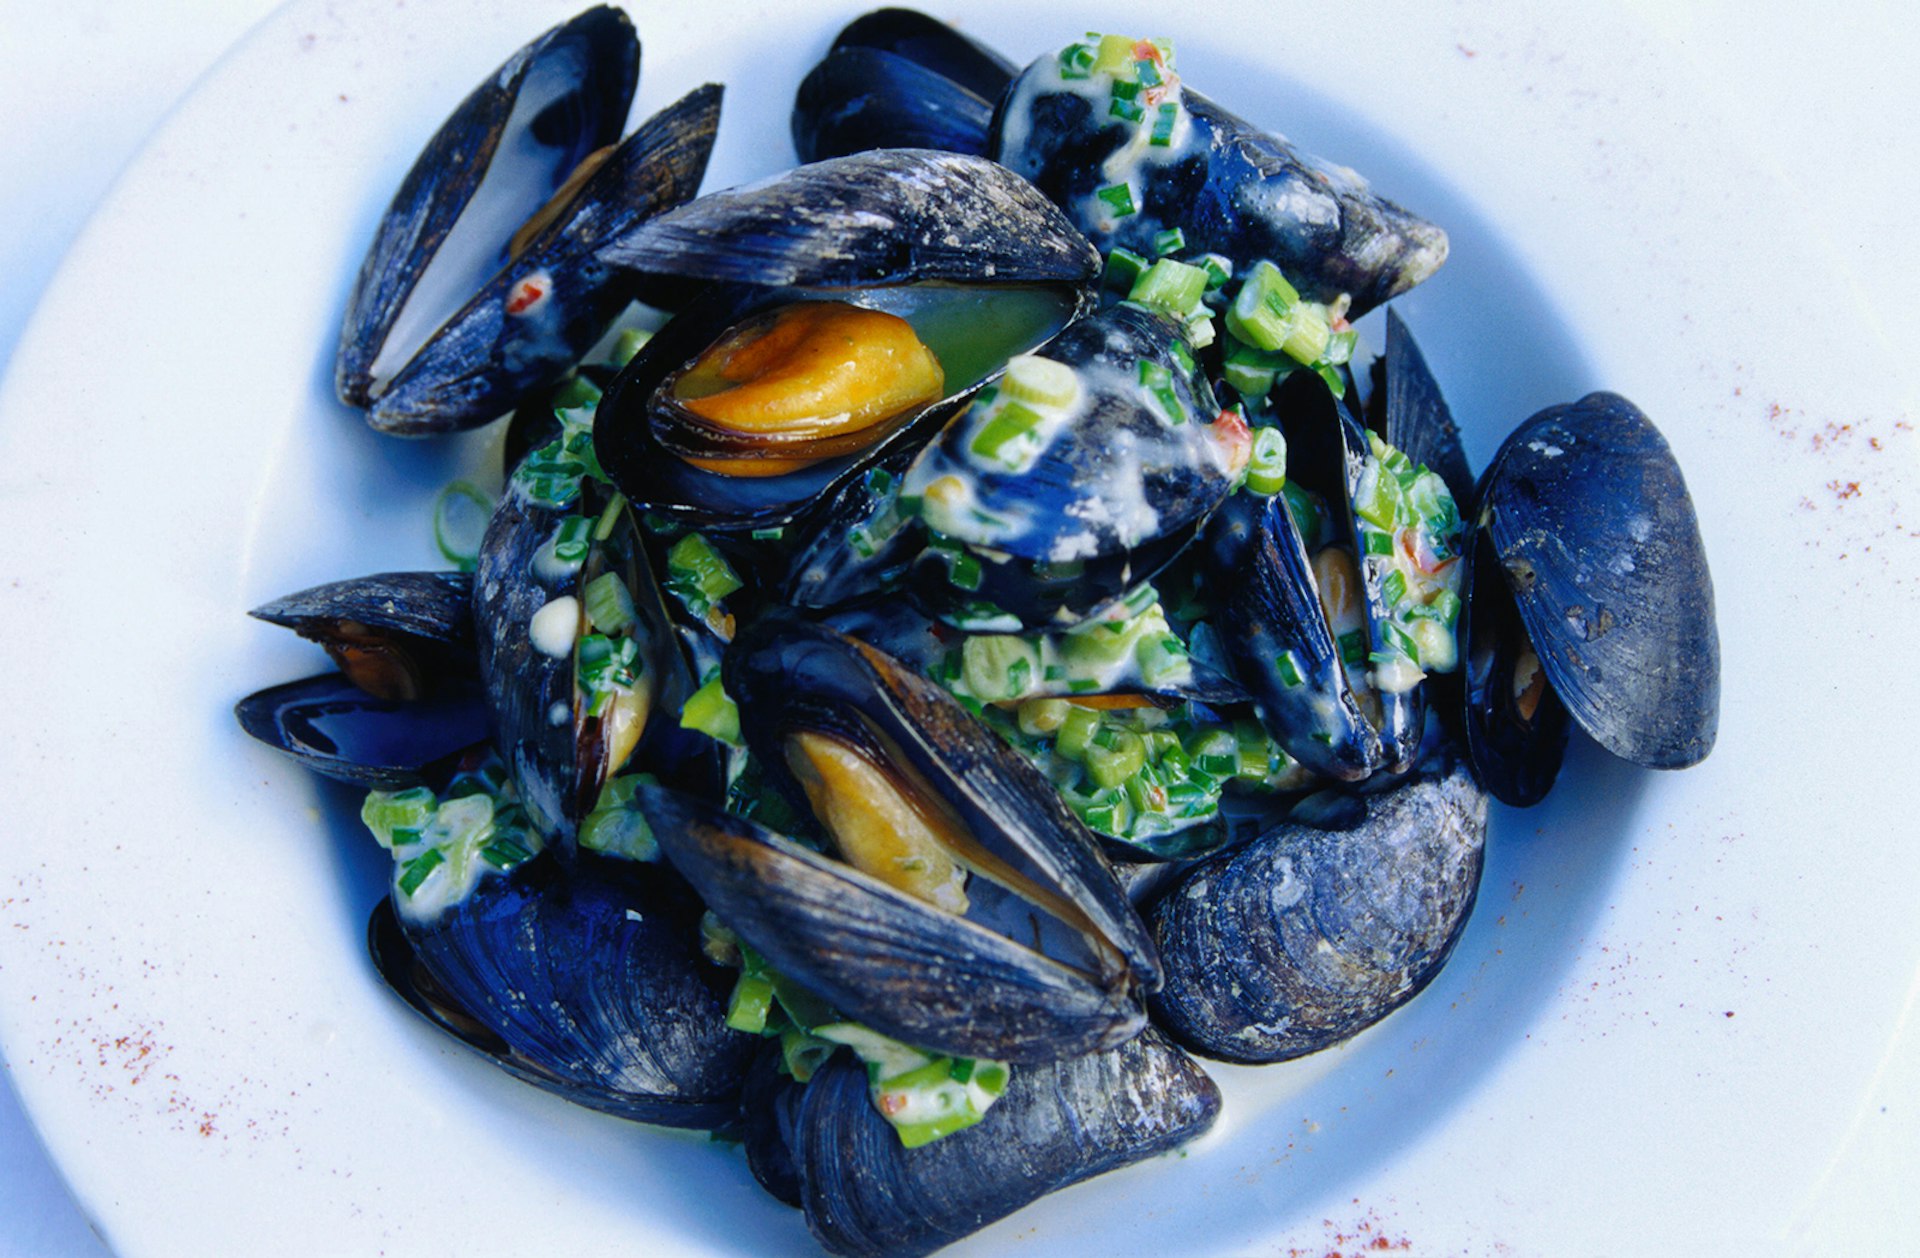 Creative cuisine at Kirwan's Lane Restaurant: Irish mussels with lemongrass, coriander and fresh chives